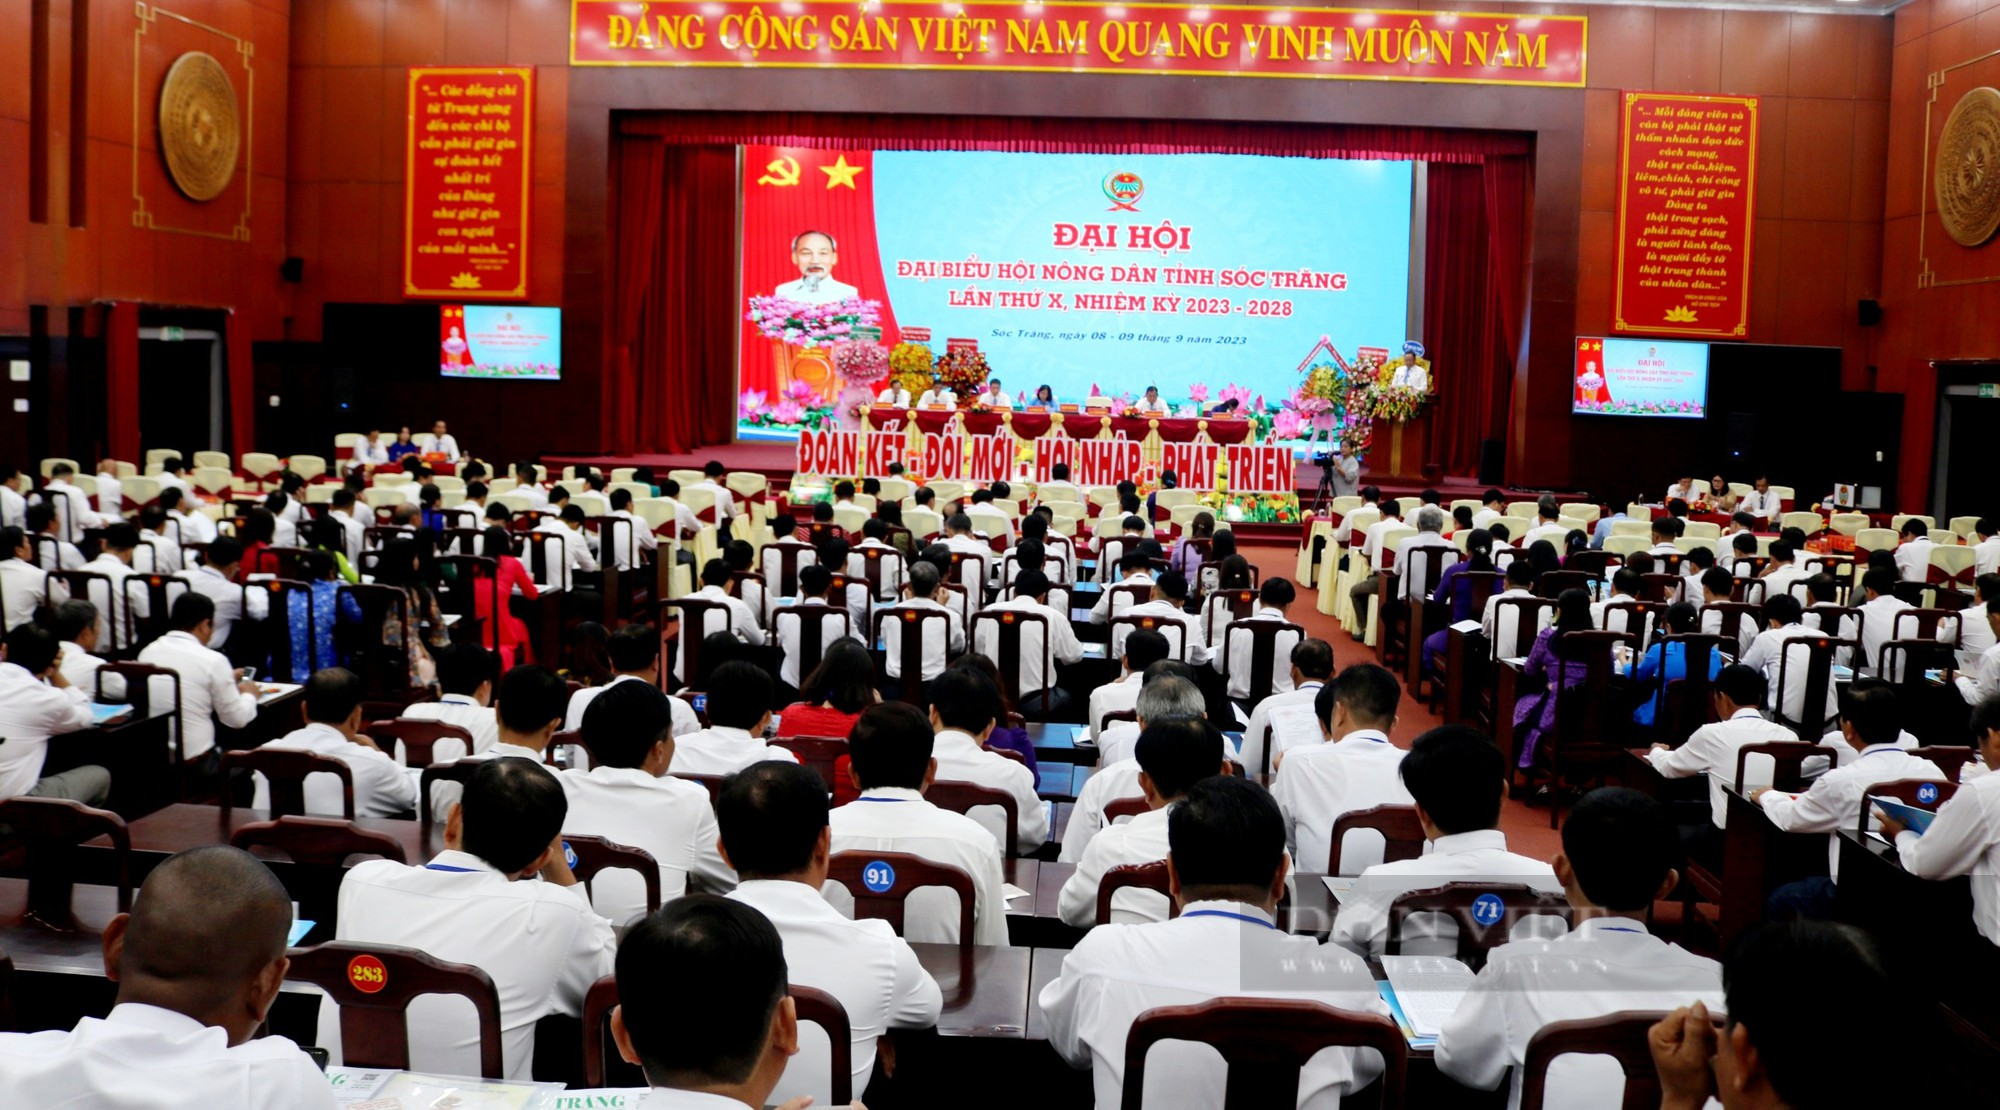  246 đại biểu tiêu biểu dự Đại hội Hội Nông dân tỉnh Sóc Trăng khóa X, nhiệm kỳ 2023 - 2028 - Ảnh 6.